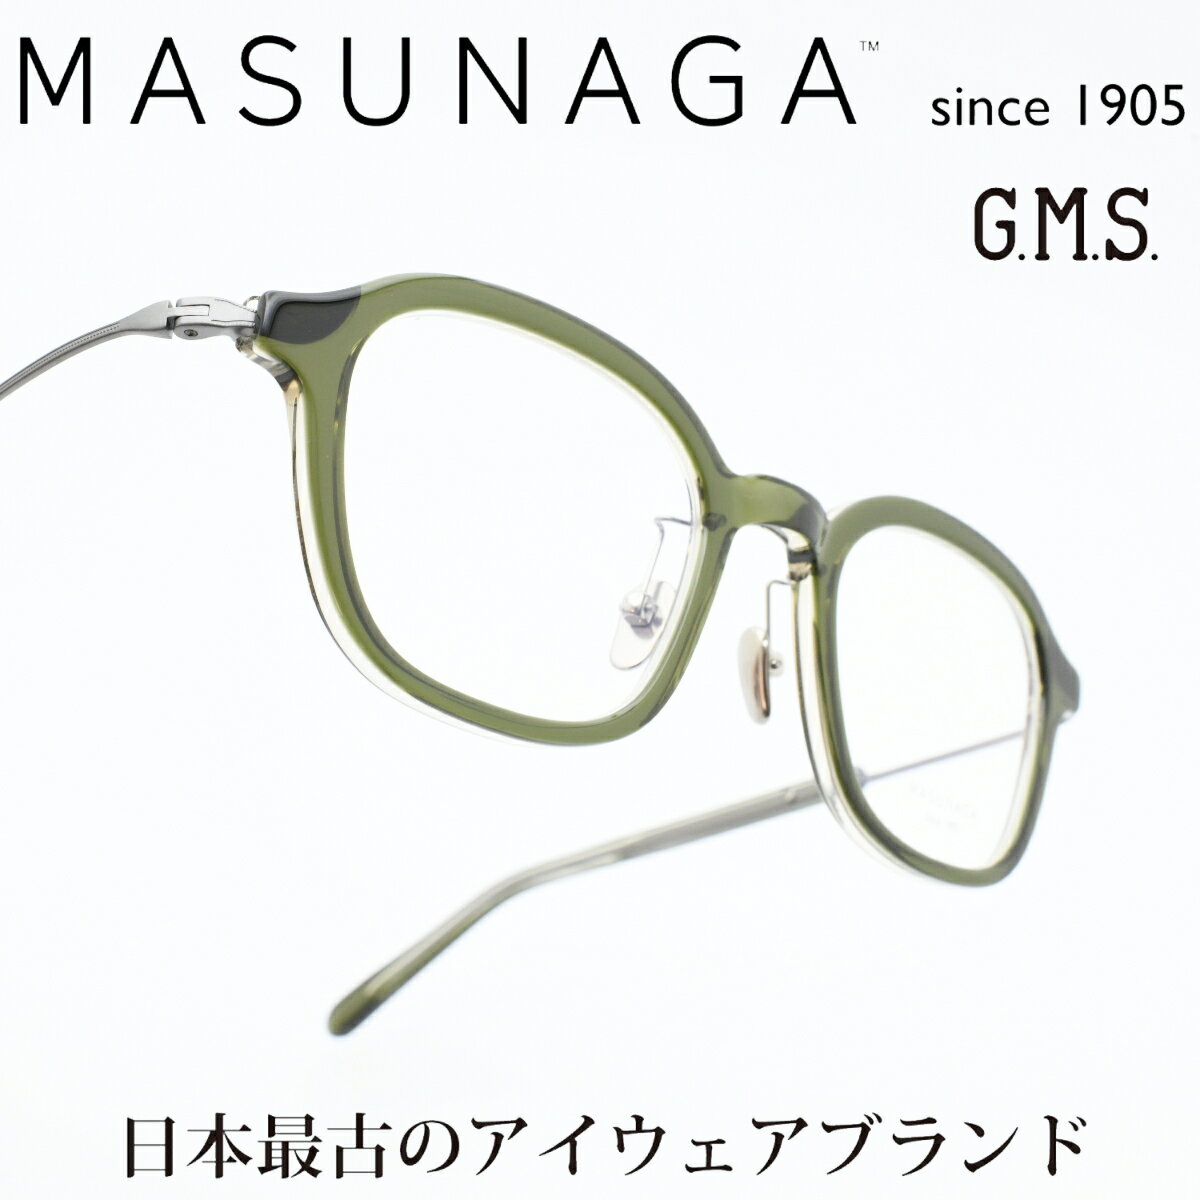 ʴ MASUNAGAGMS 125 col-38 GREEN